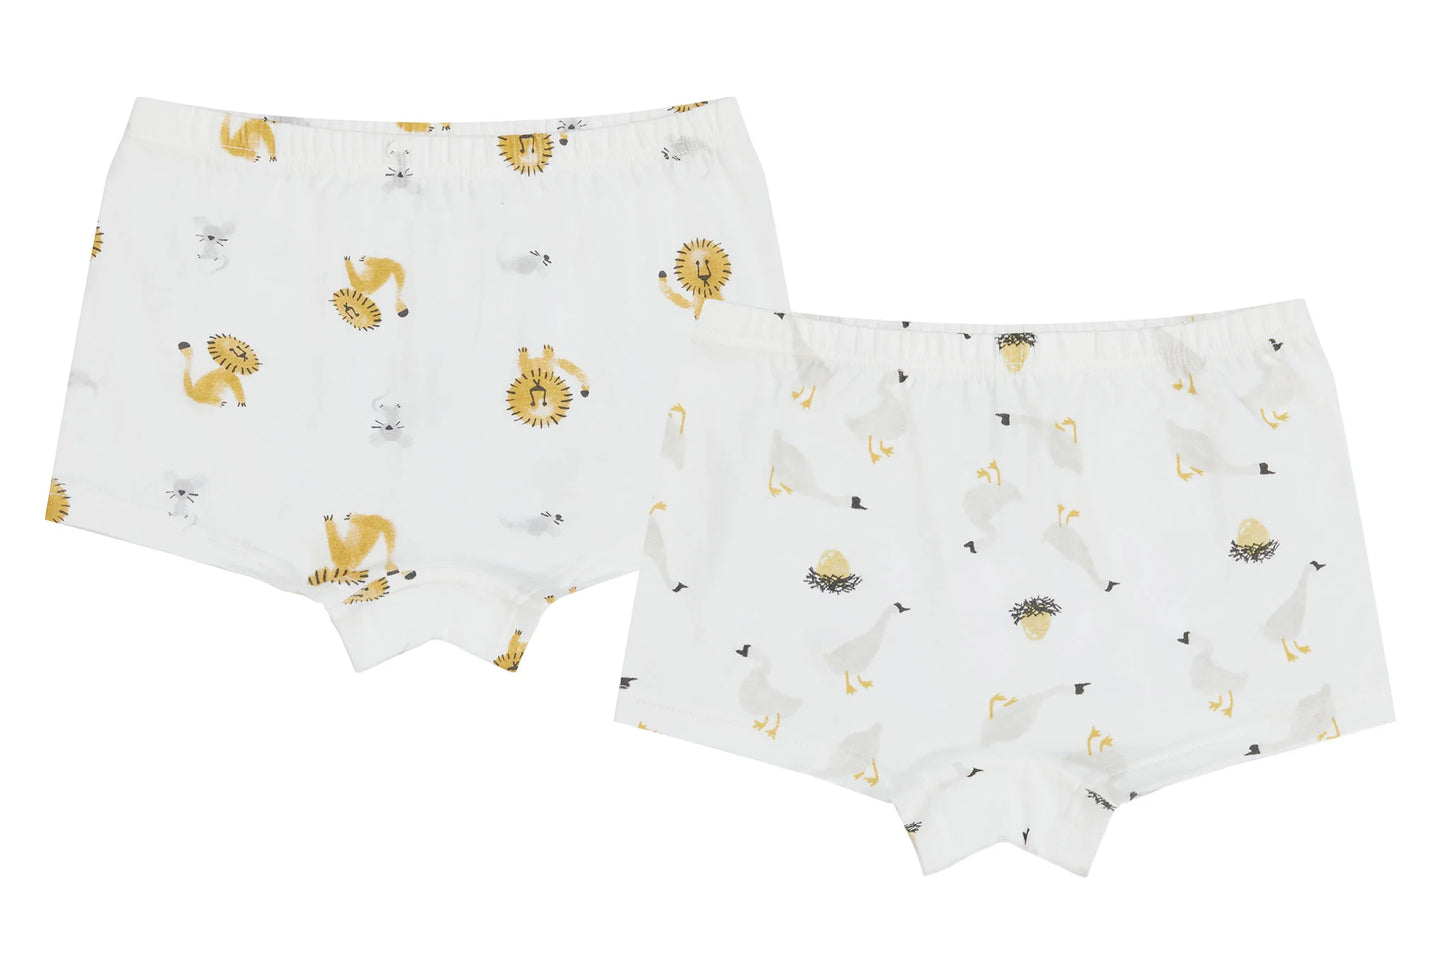 Bamboo Girls Boxer Briefs Underwear (2 Pack)